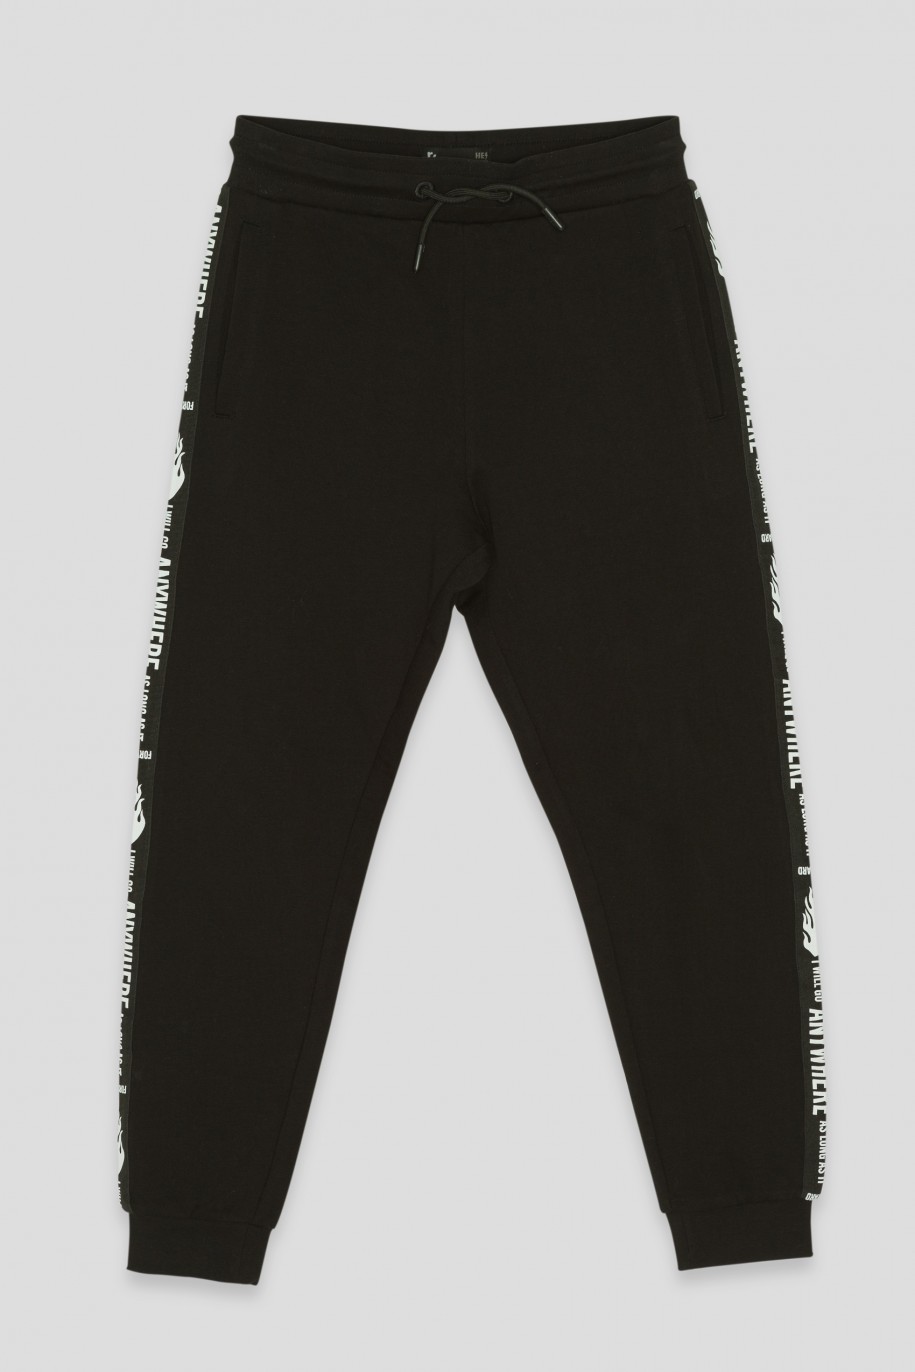 Czarne spodnie dresowe z lampasem - 41914